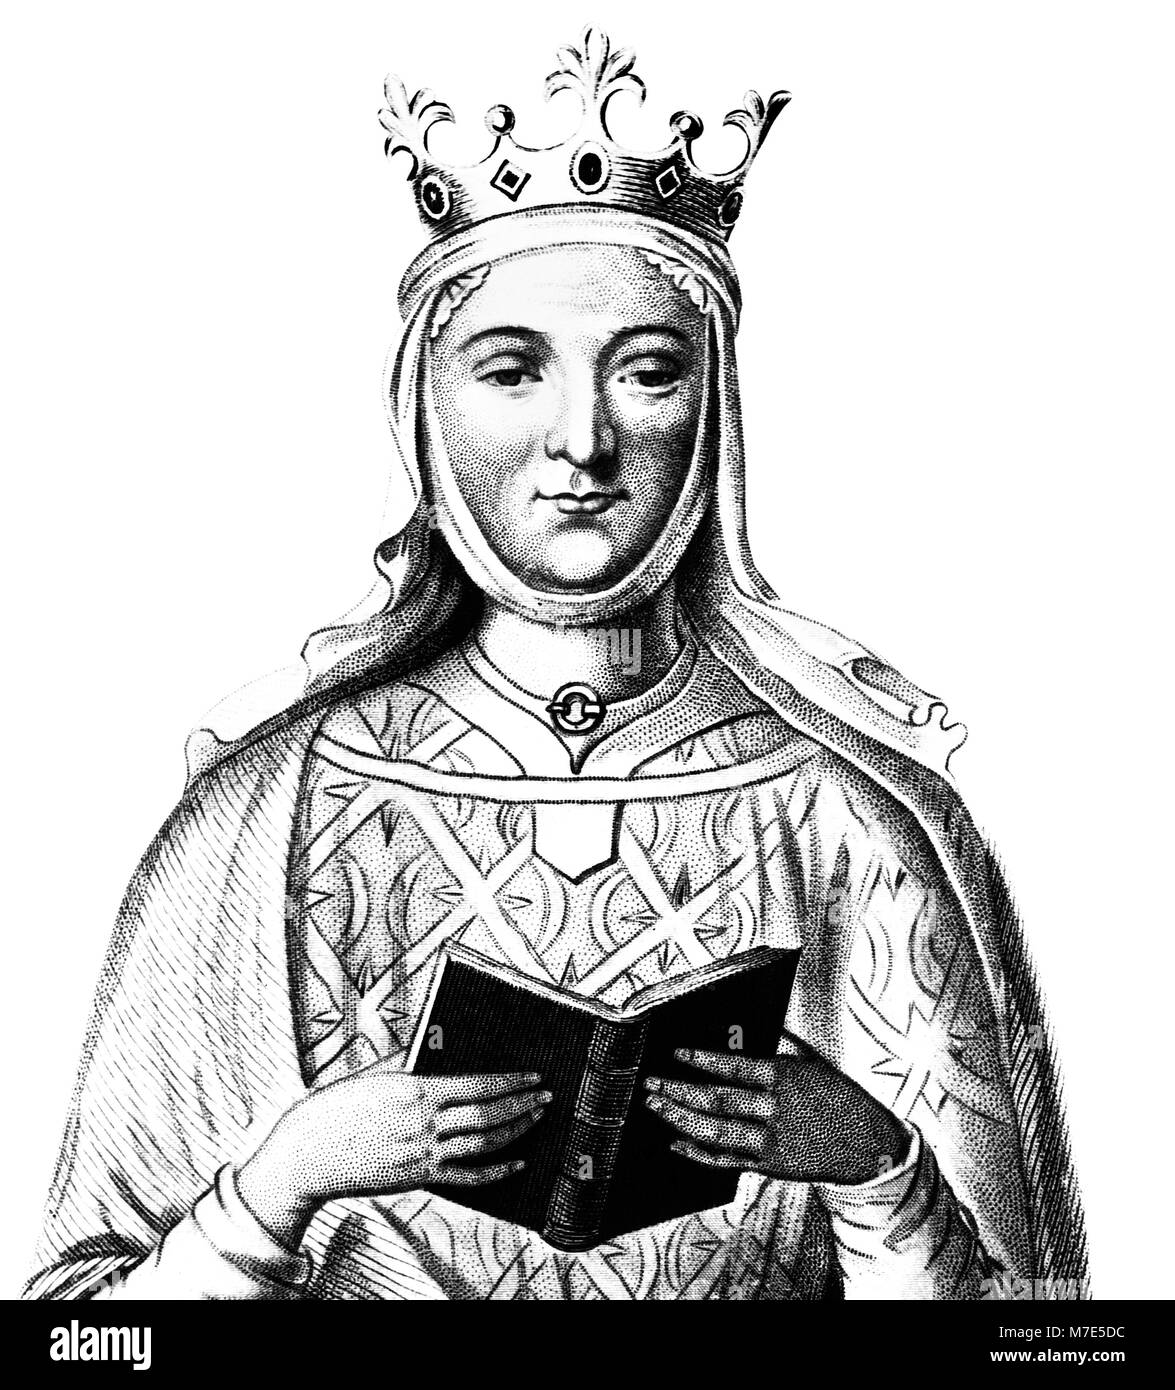 Aliénor d'Aquitaine (1122-1204), gravure de la Reine consort d'Angleterre (comme l'épouse de Henri II) et de la France (comme l'épouse de Louis VII). Elle était la mère des deux le roi Richard I et le roi Jean. Banque D'Images